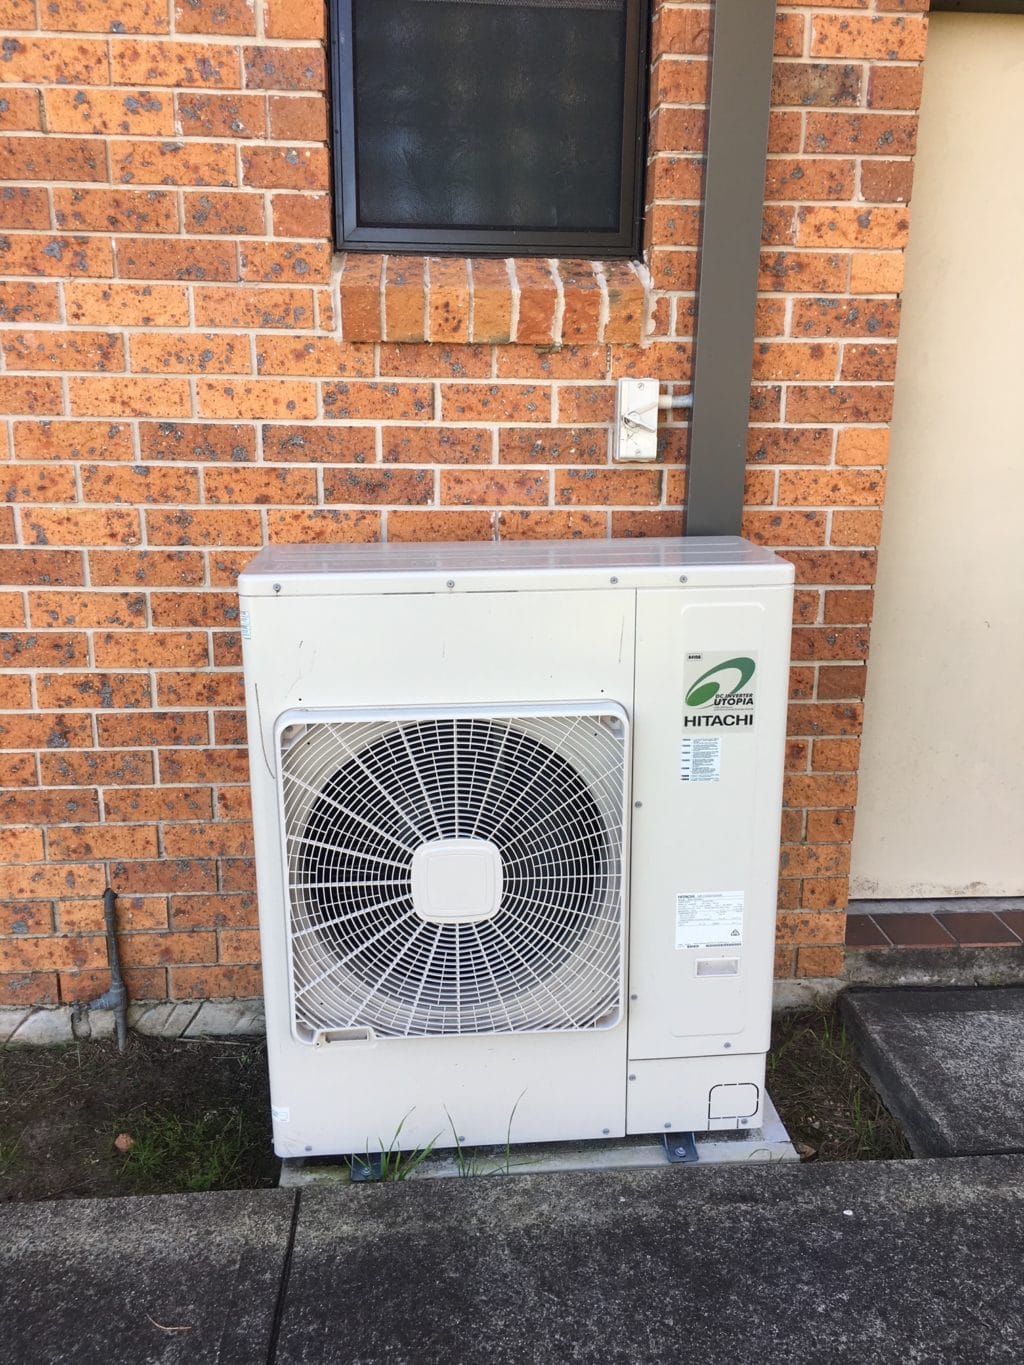 Hitachi Air Conditioning Unit